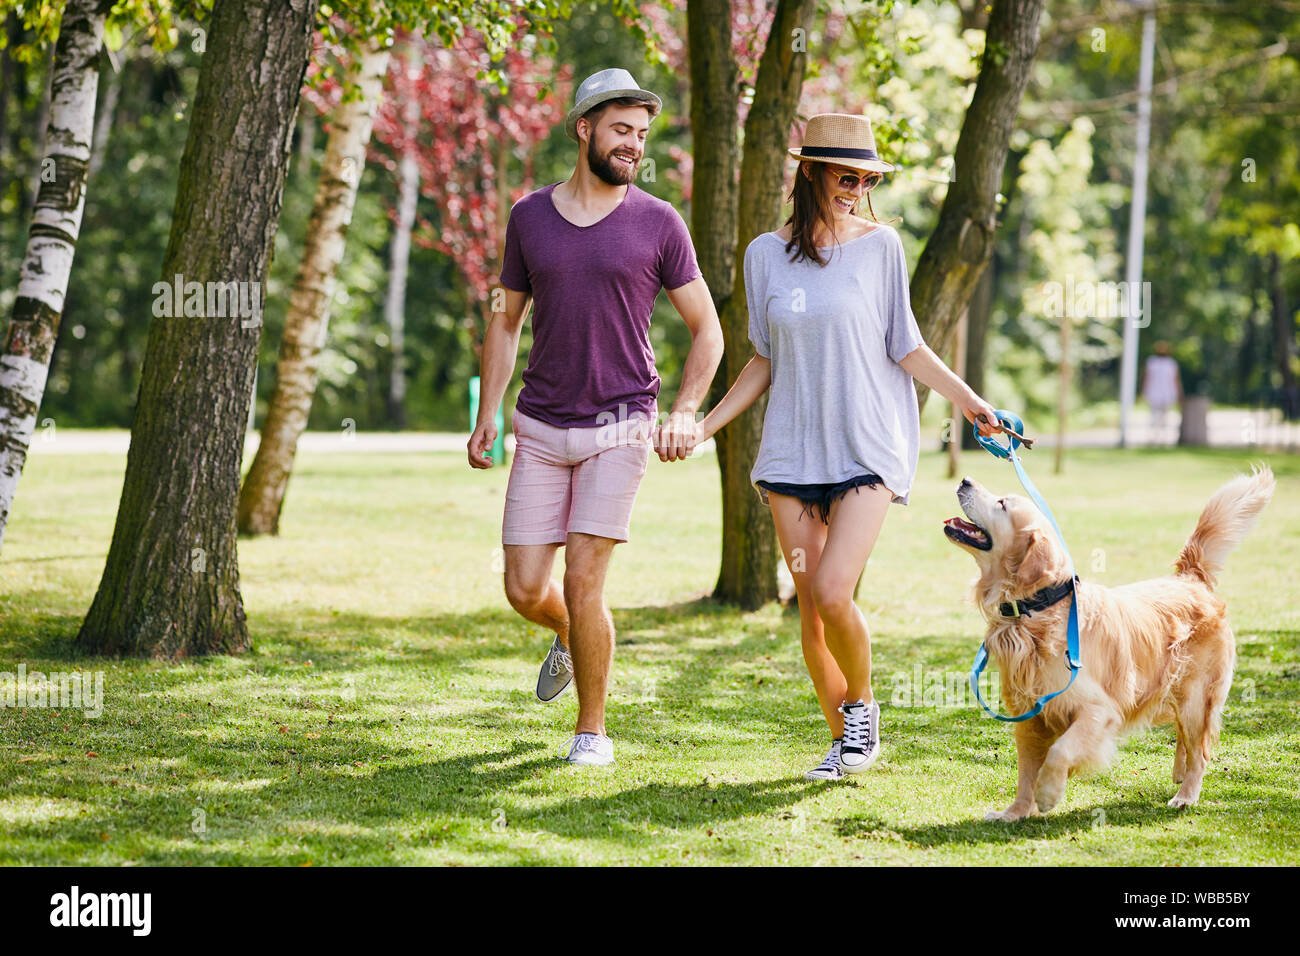 persona paseando alegremente con perros en parque